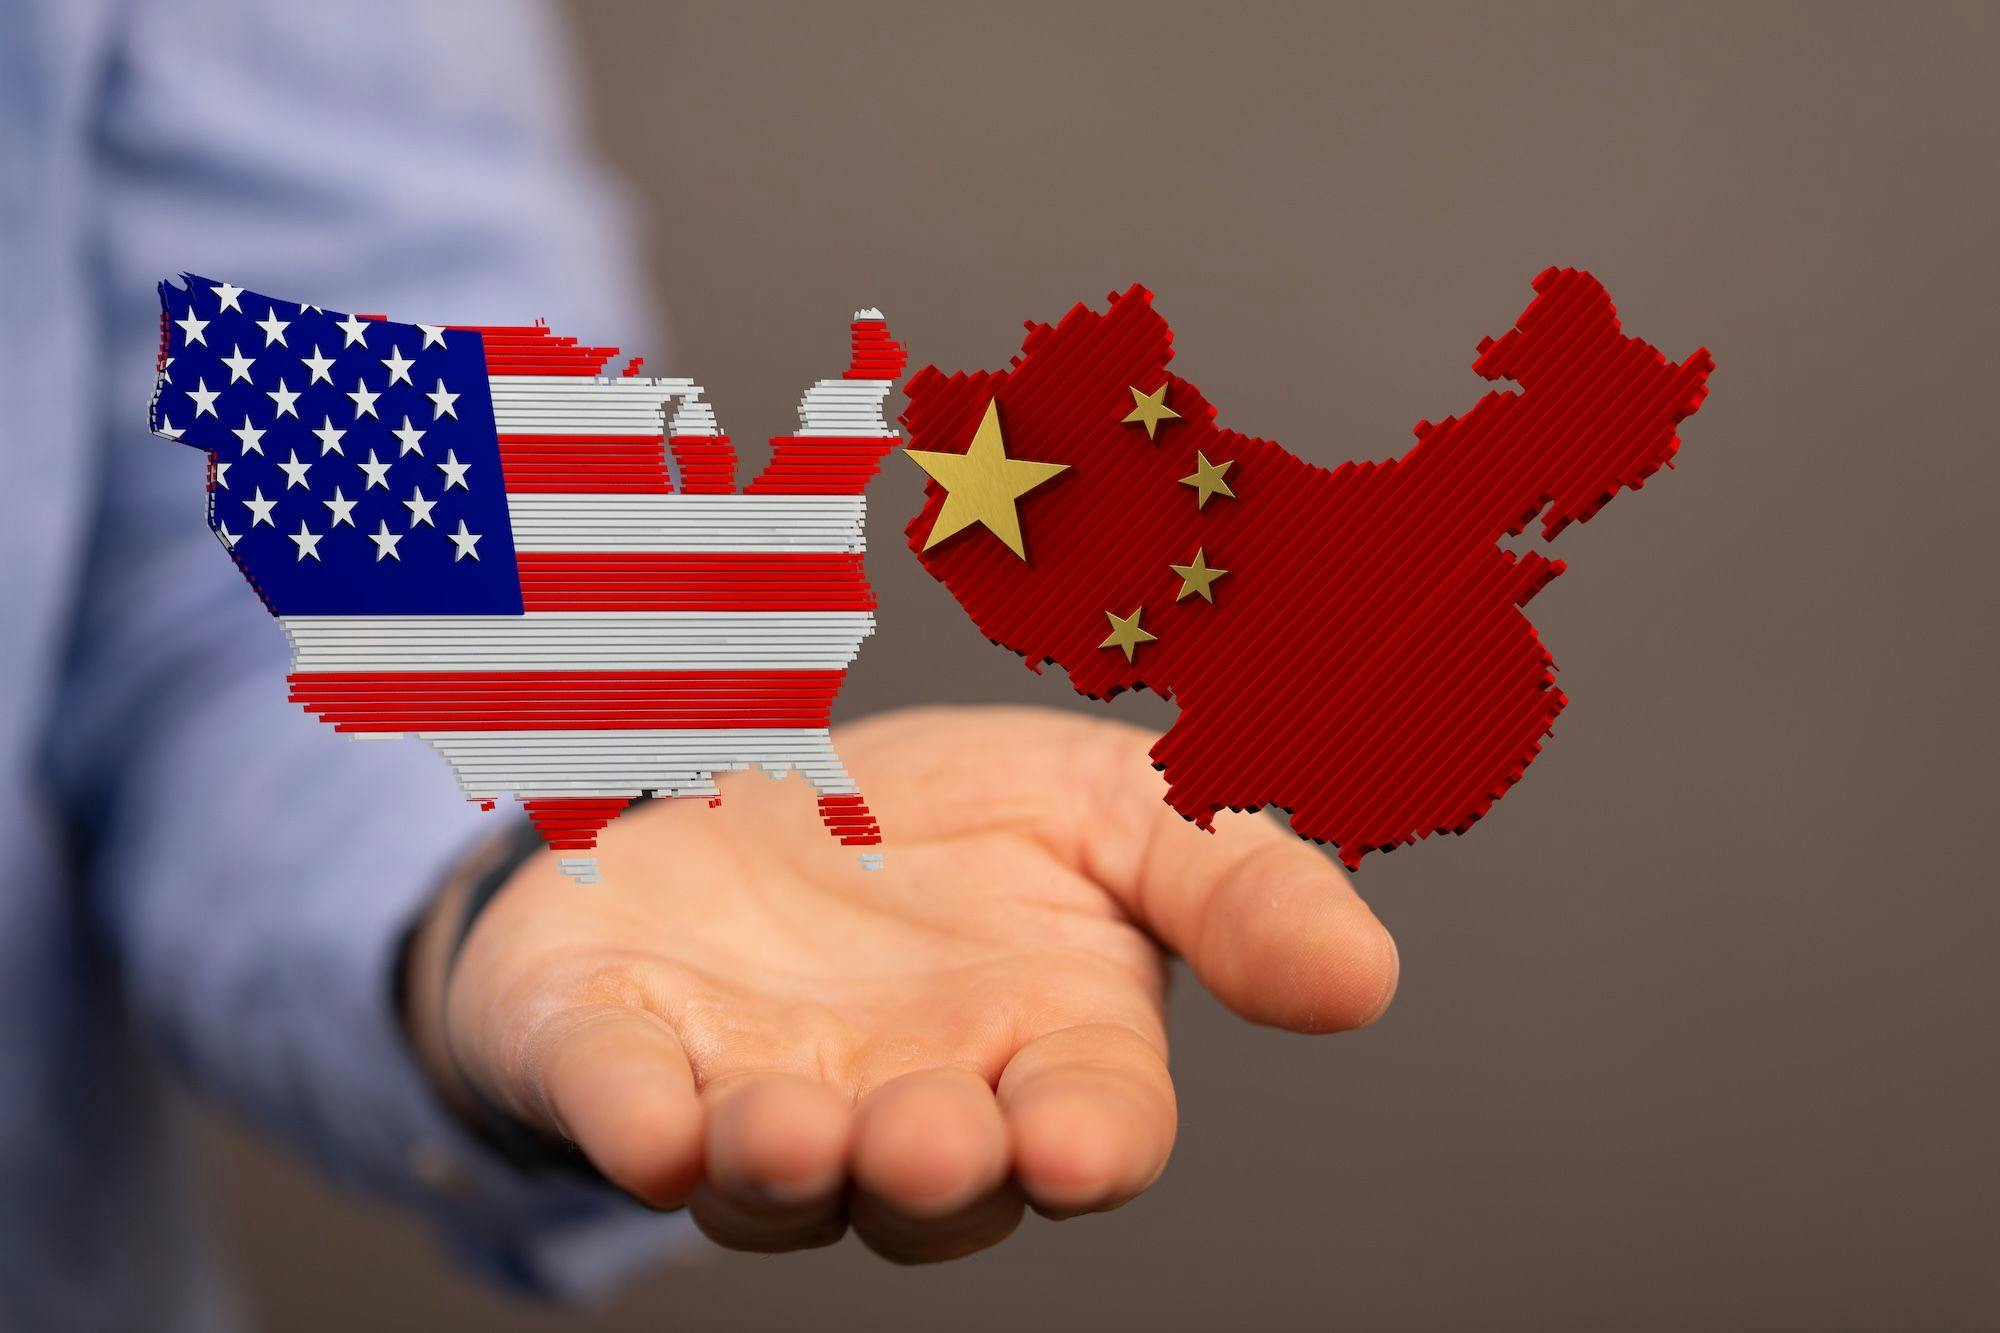 China USA Kooperation, Zusammenarbeit, Konflikt, Streit: Eine Hand hält die US-Amerikanische und chinesische Flagge, beide in der Form des jeweiligen Landes